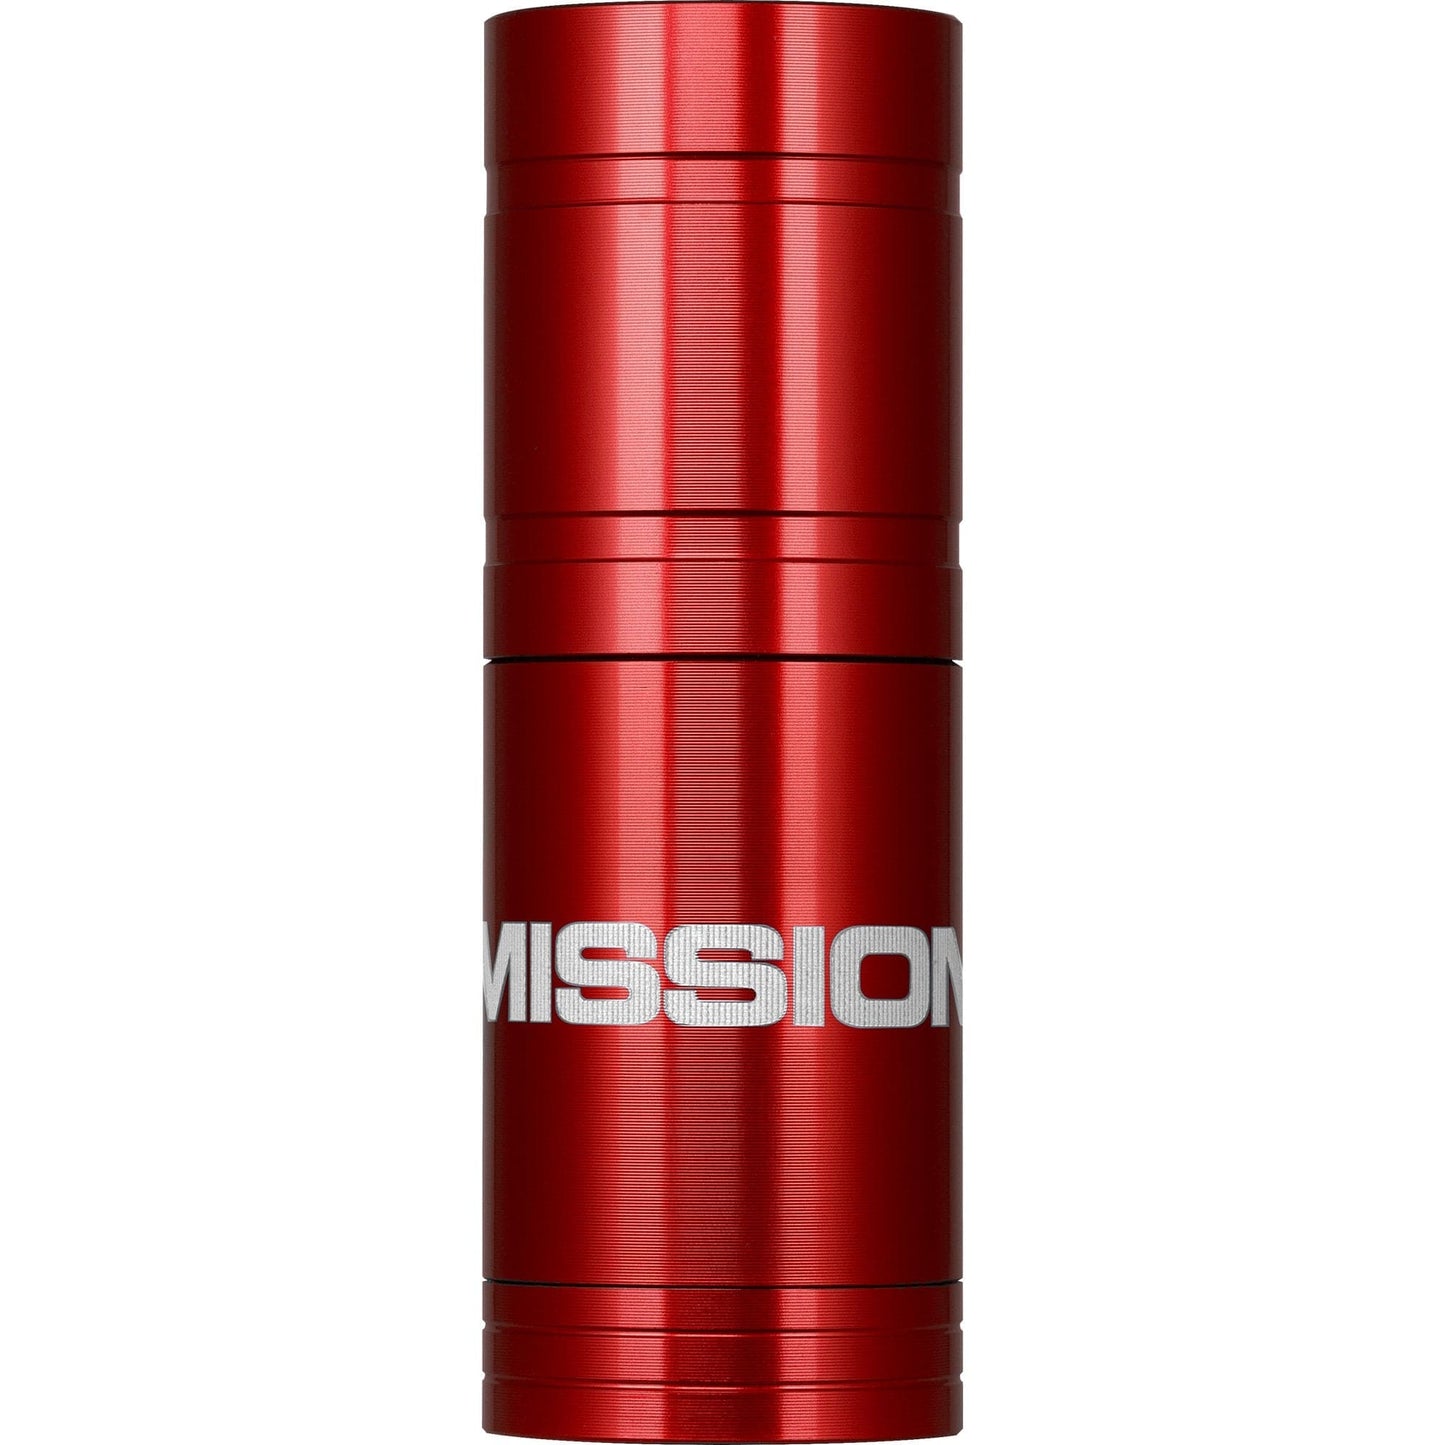 Mission Soft Tip Dispenser - holds 25 tips - Magnetic Holder